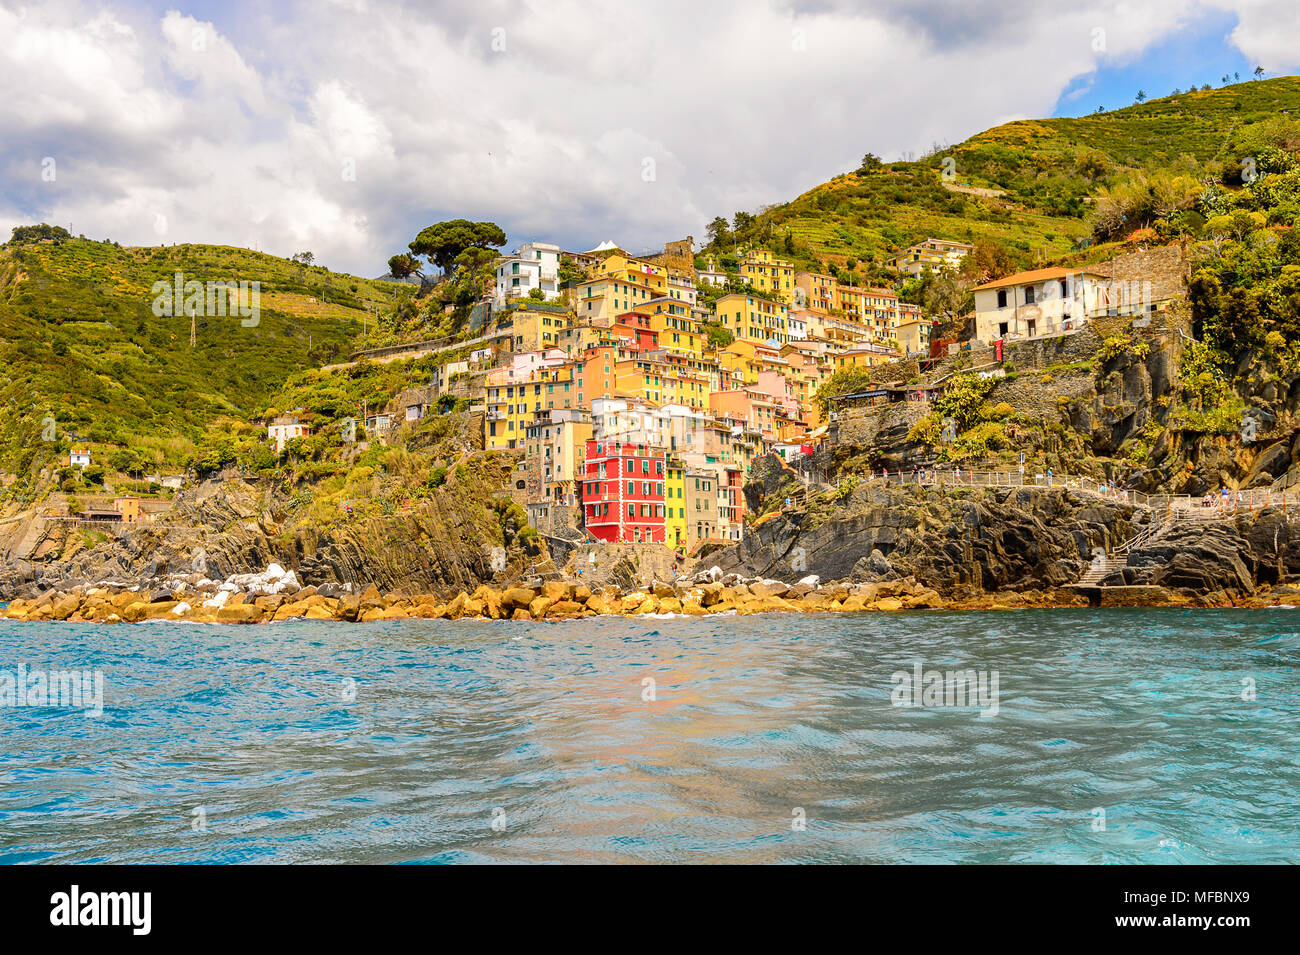 Beautiful sea view of Riomaggiore (Rimazuu), a village in province of La Spezia, Liguria, Italy. It's one of the lands of Cinque Terre, UNESCO World H Stock Photo